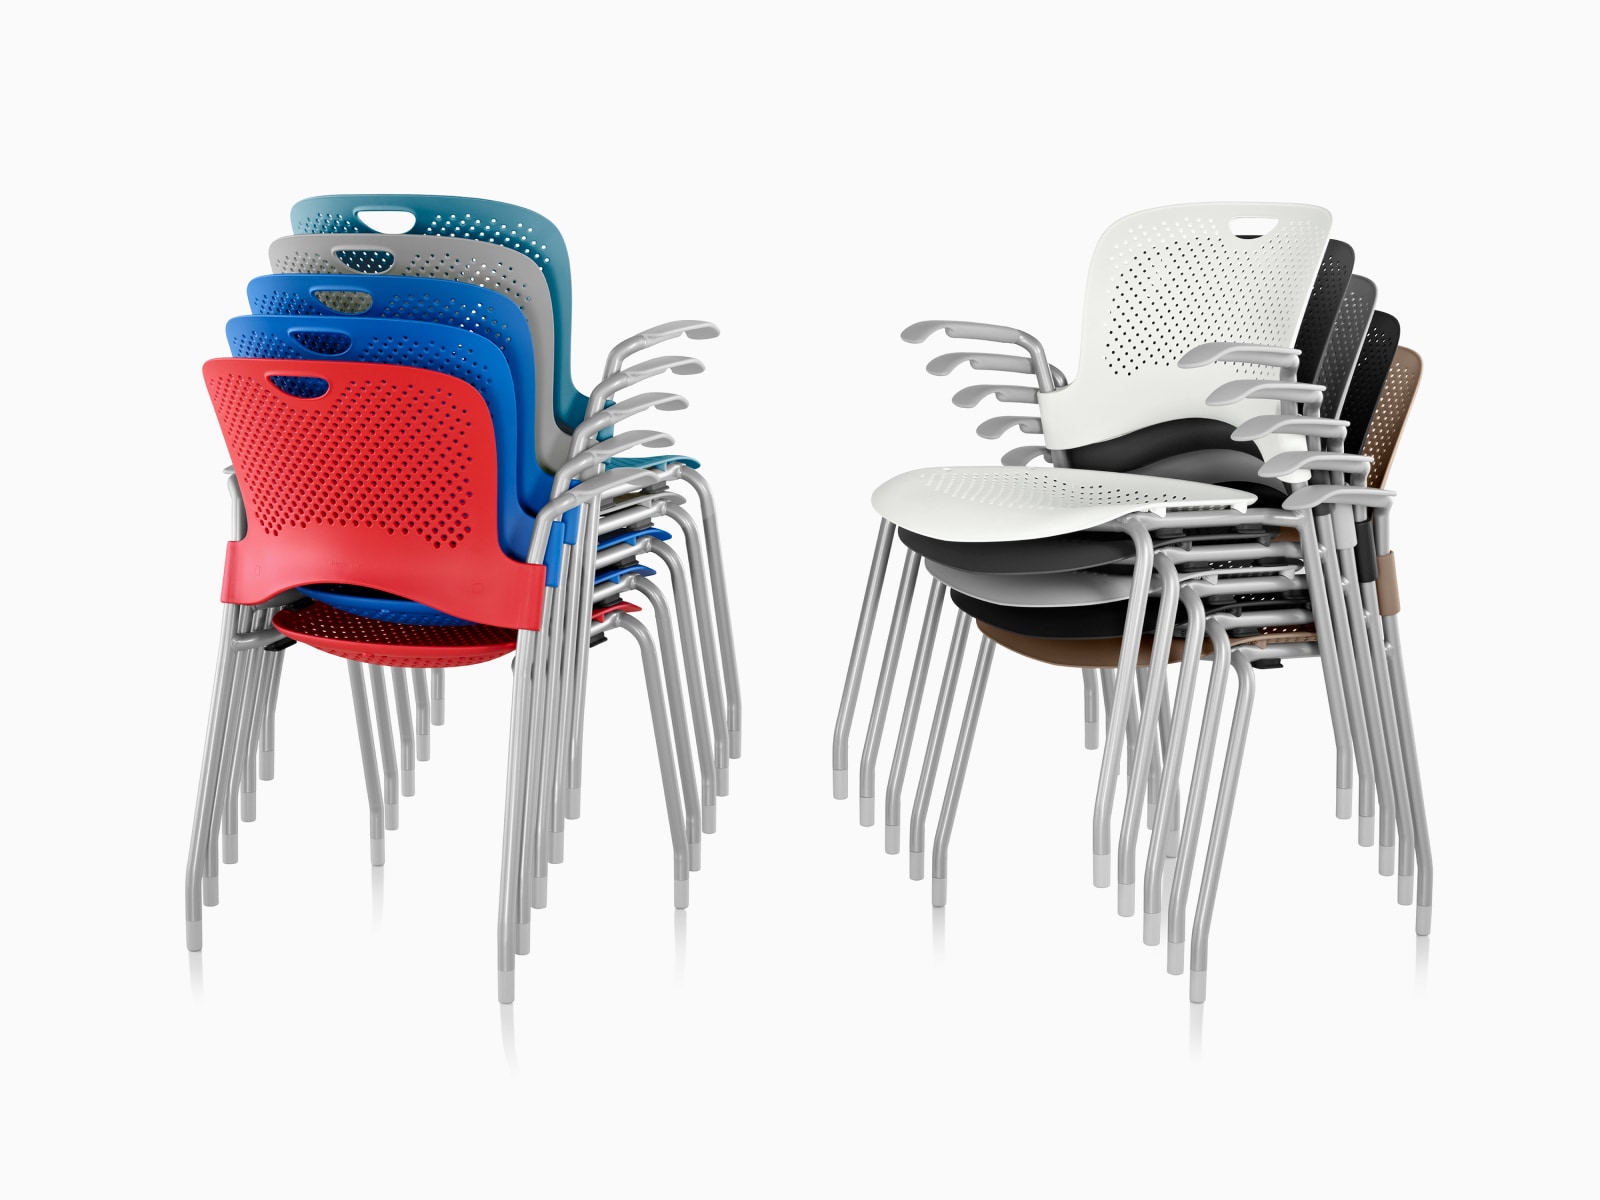 Twee sets Caper stapelbare stoelen in verschillende kleuren, beide vijf hoog gestapeld.